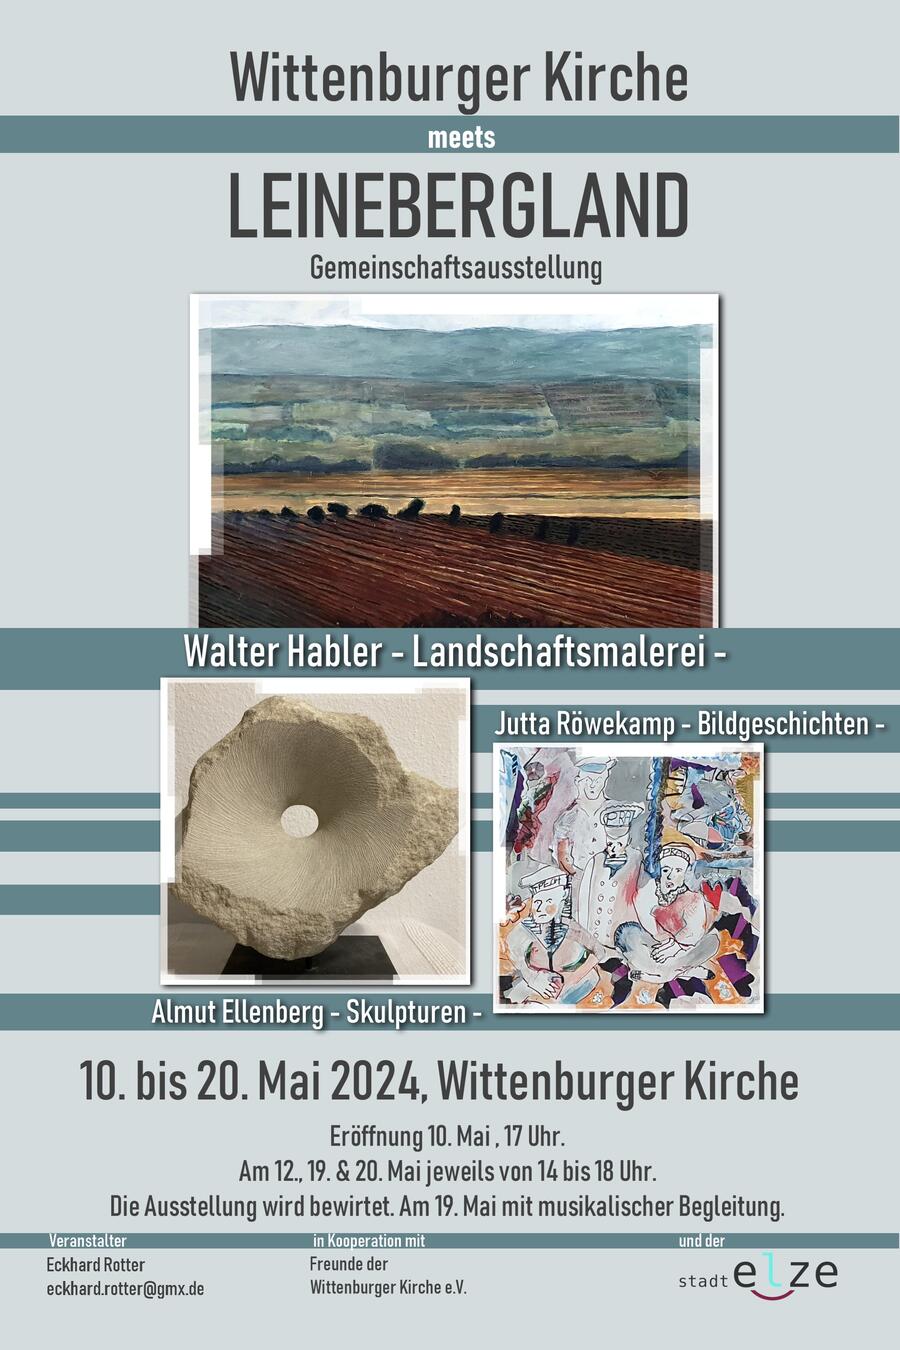 Interner Link: Zur Veranstaltung Wittenburger Kirche meets Leinebergland